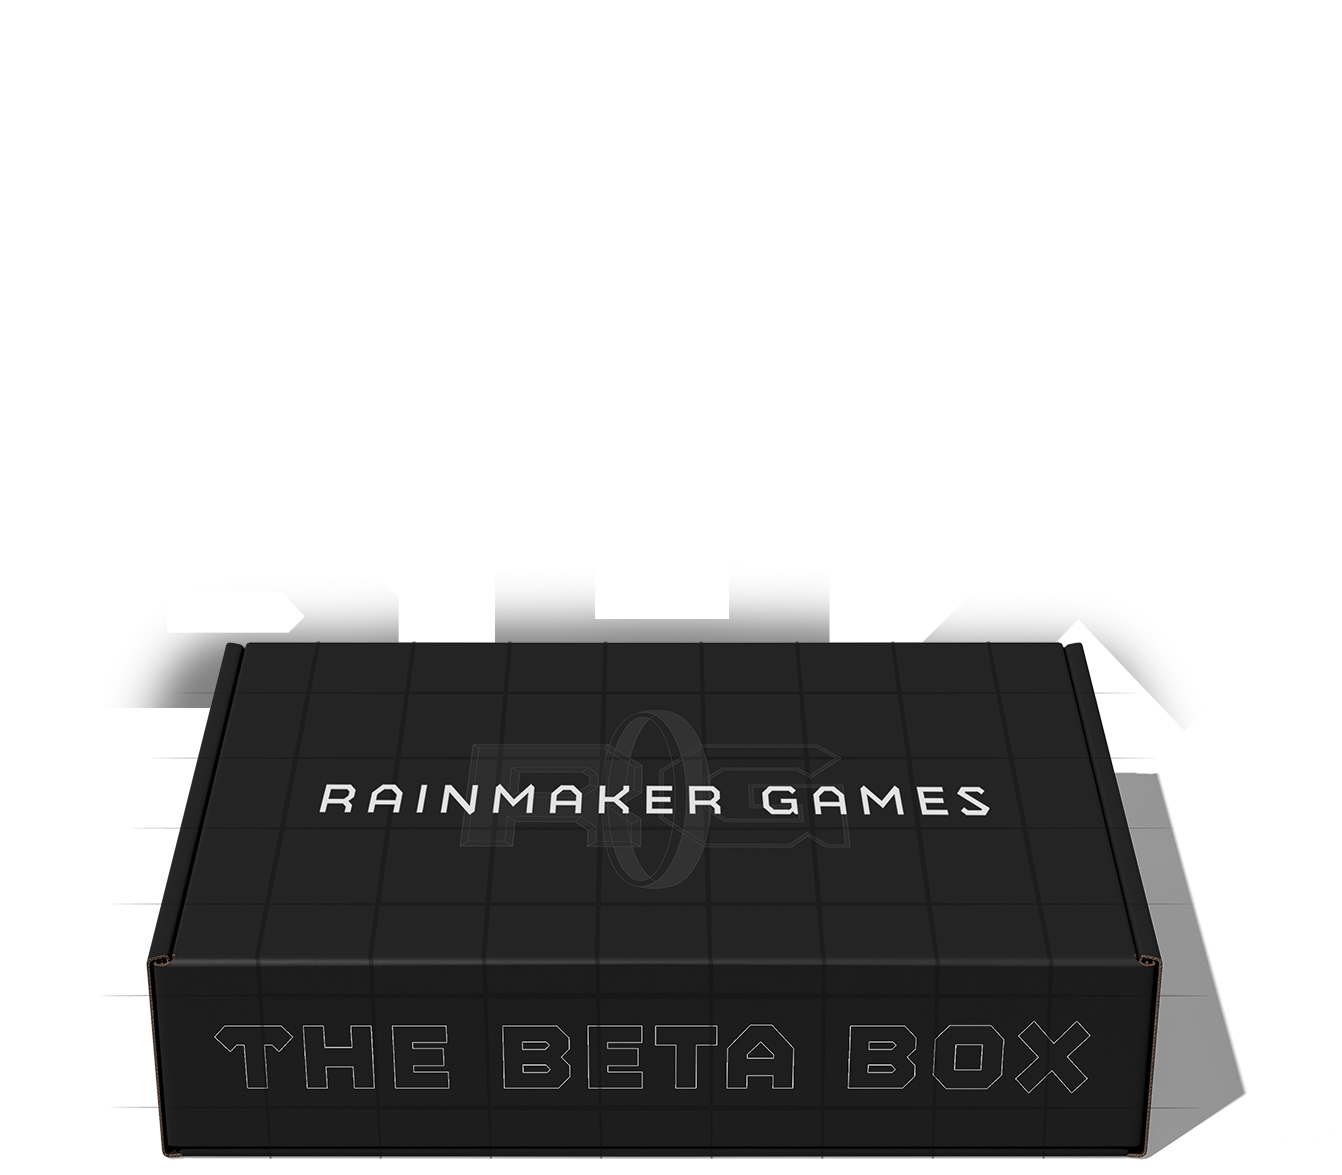 Rainmaker Games